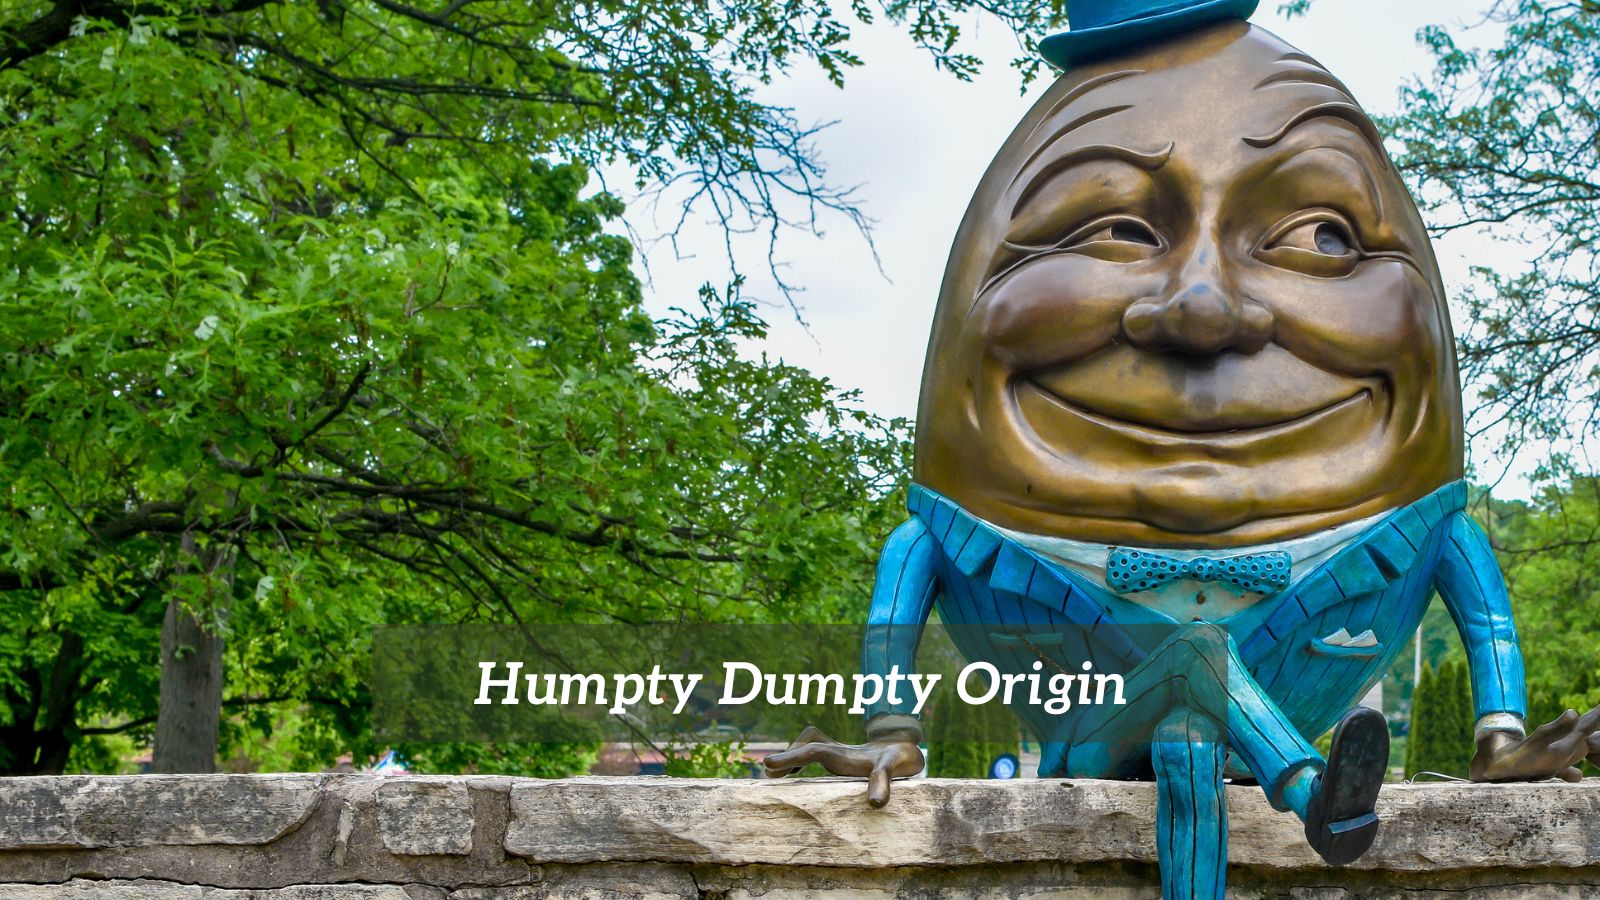 Humpty Dumpty Origin